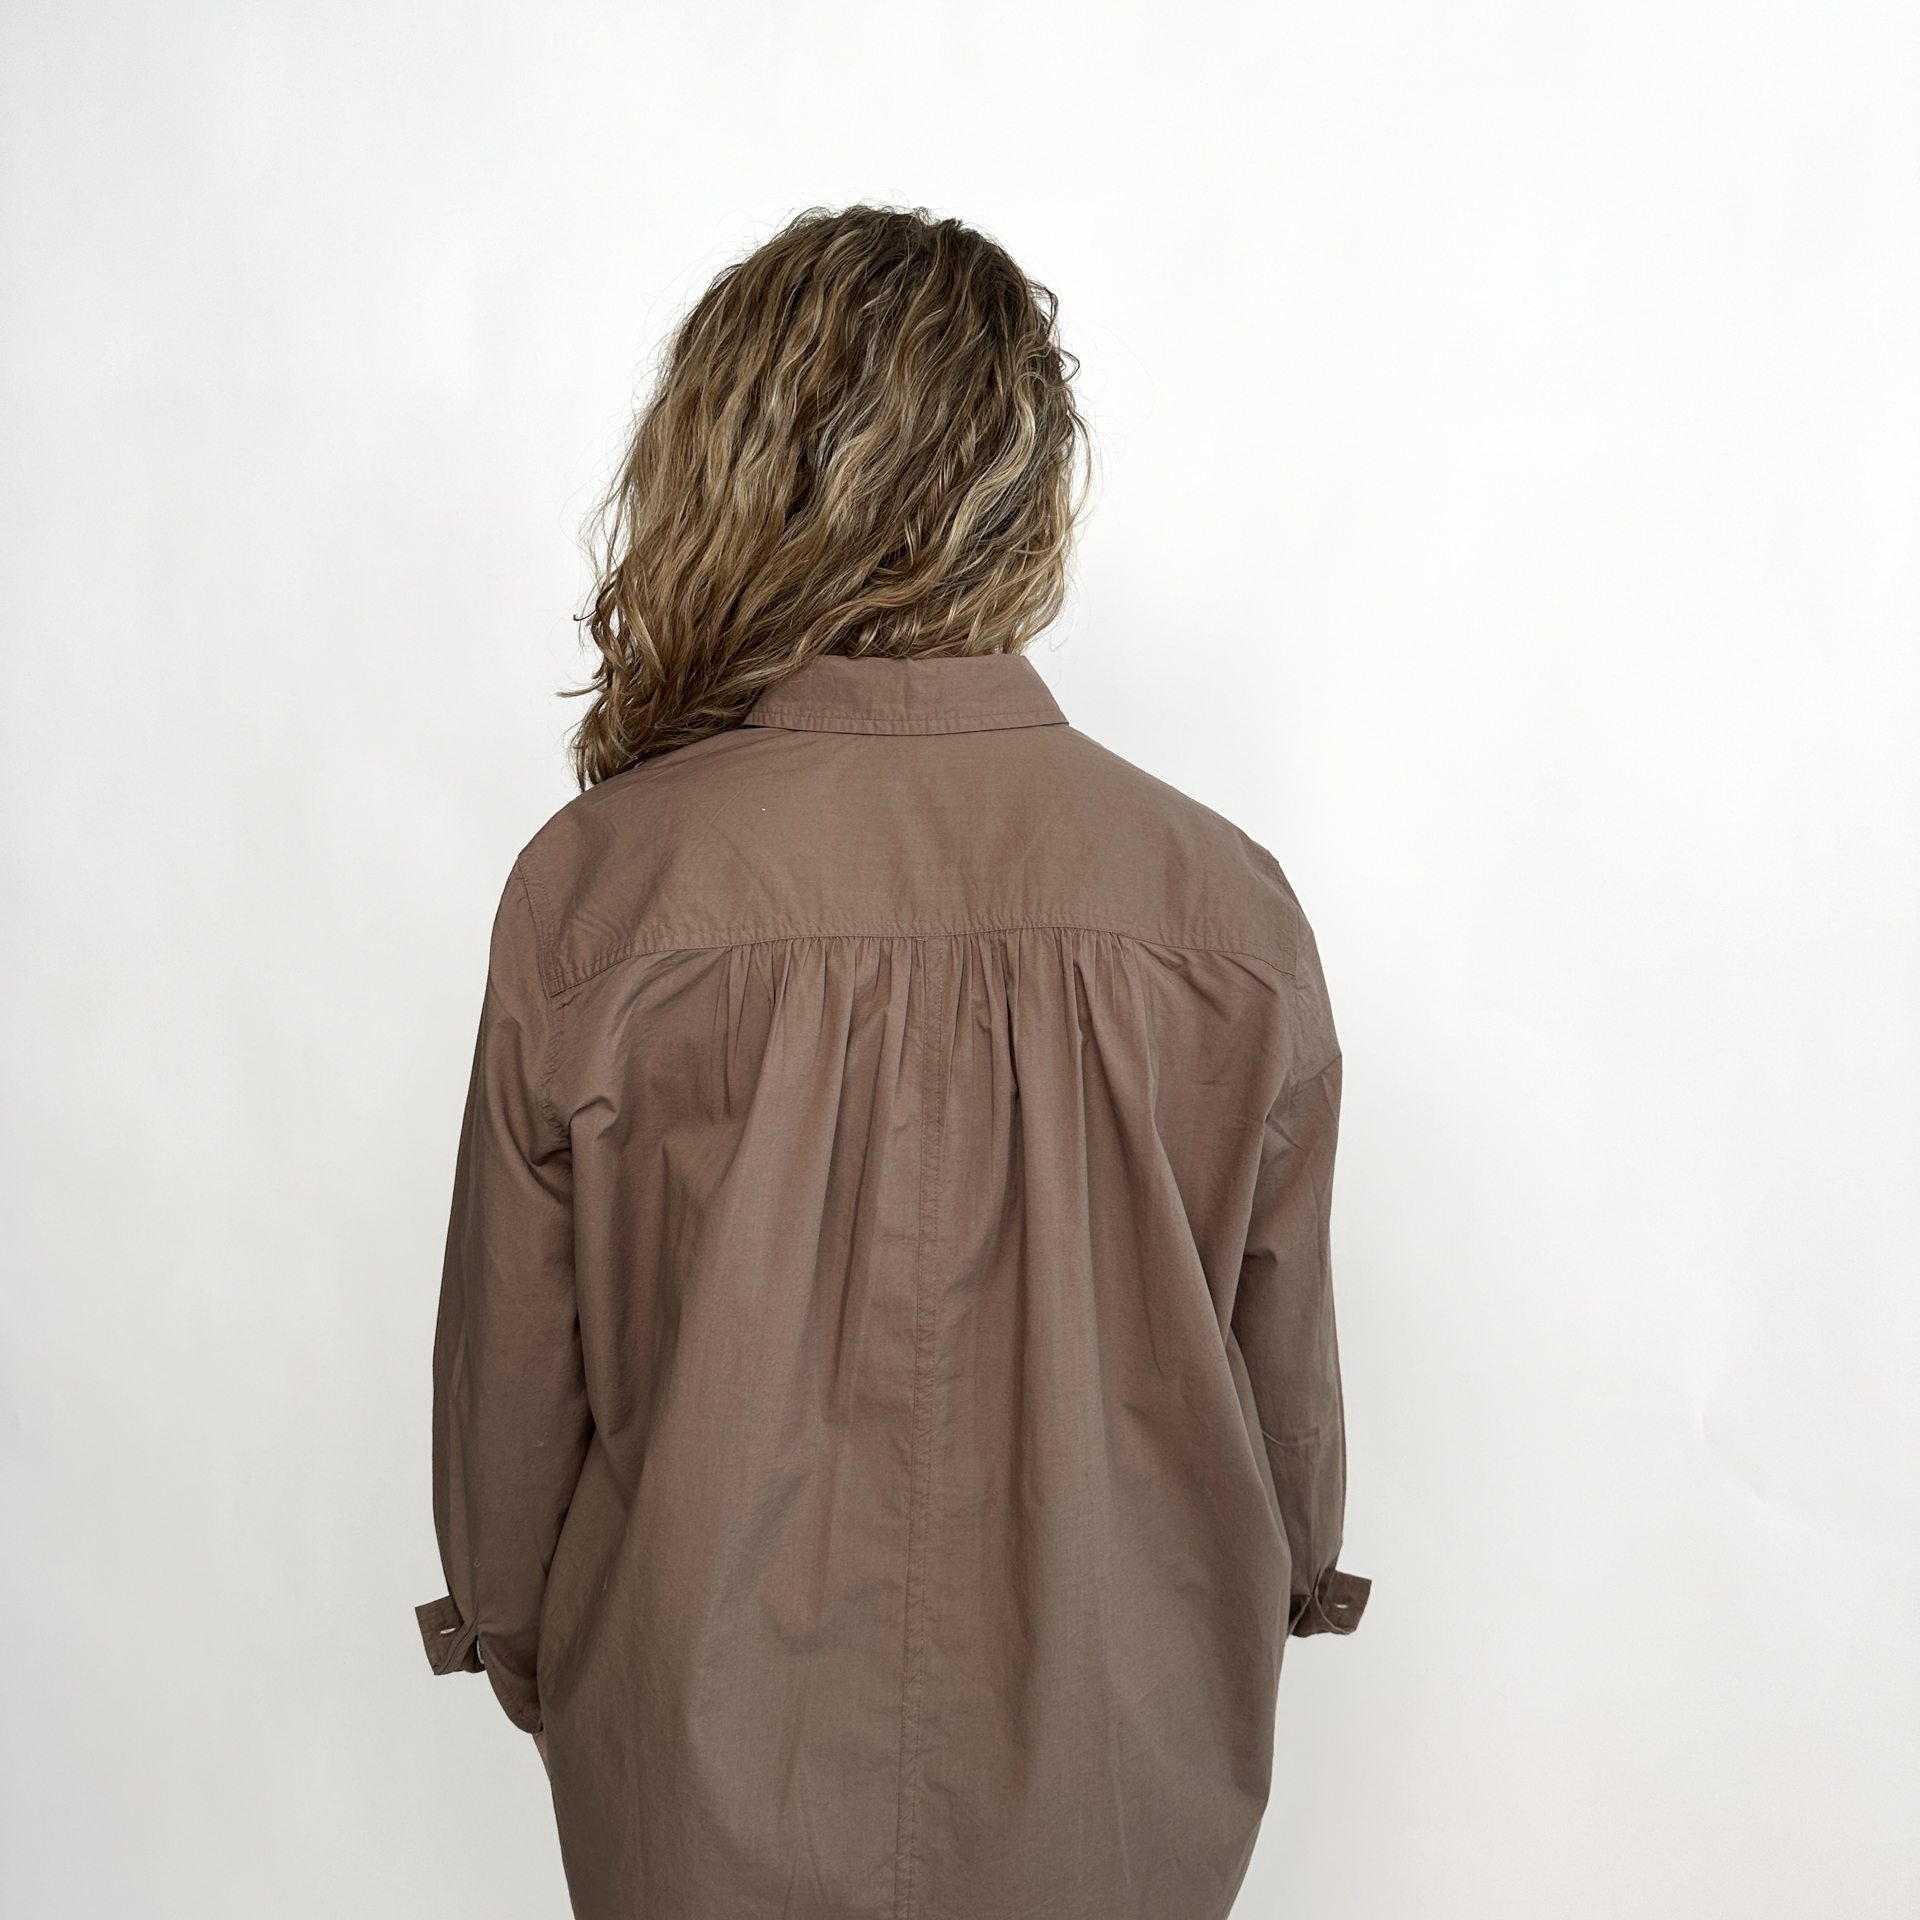 Snor ballon ketcher PROJECT AJ117 Hedine skjorte | Black | STR S | 223289-Black-STR S